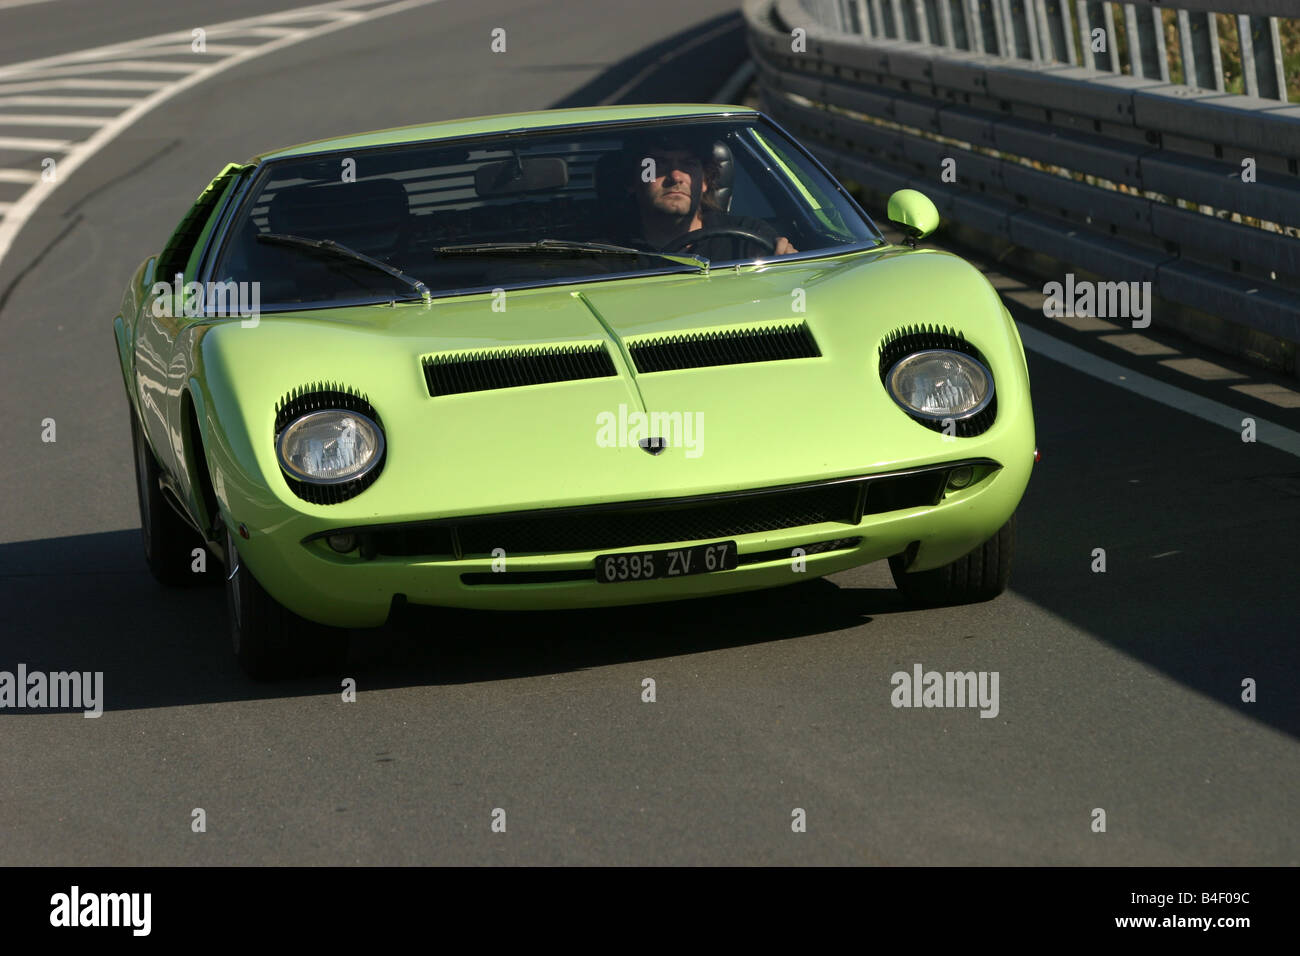 Coche, Lamborghini Miura P 400 S, coches antiguos, verde, un coche  deportivo, un modelo del año 1967-1973, 1960, 1960, 1970, 1970, viejo coche  Fotografía de stock - Alamy